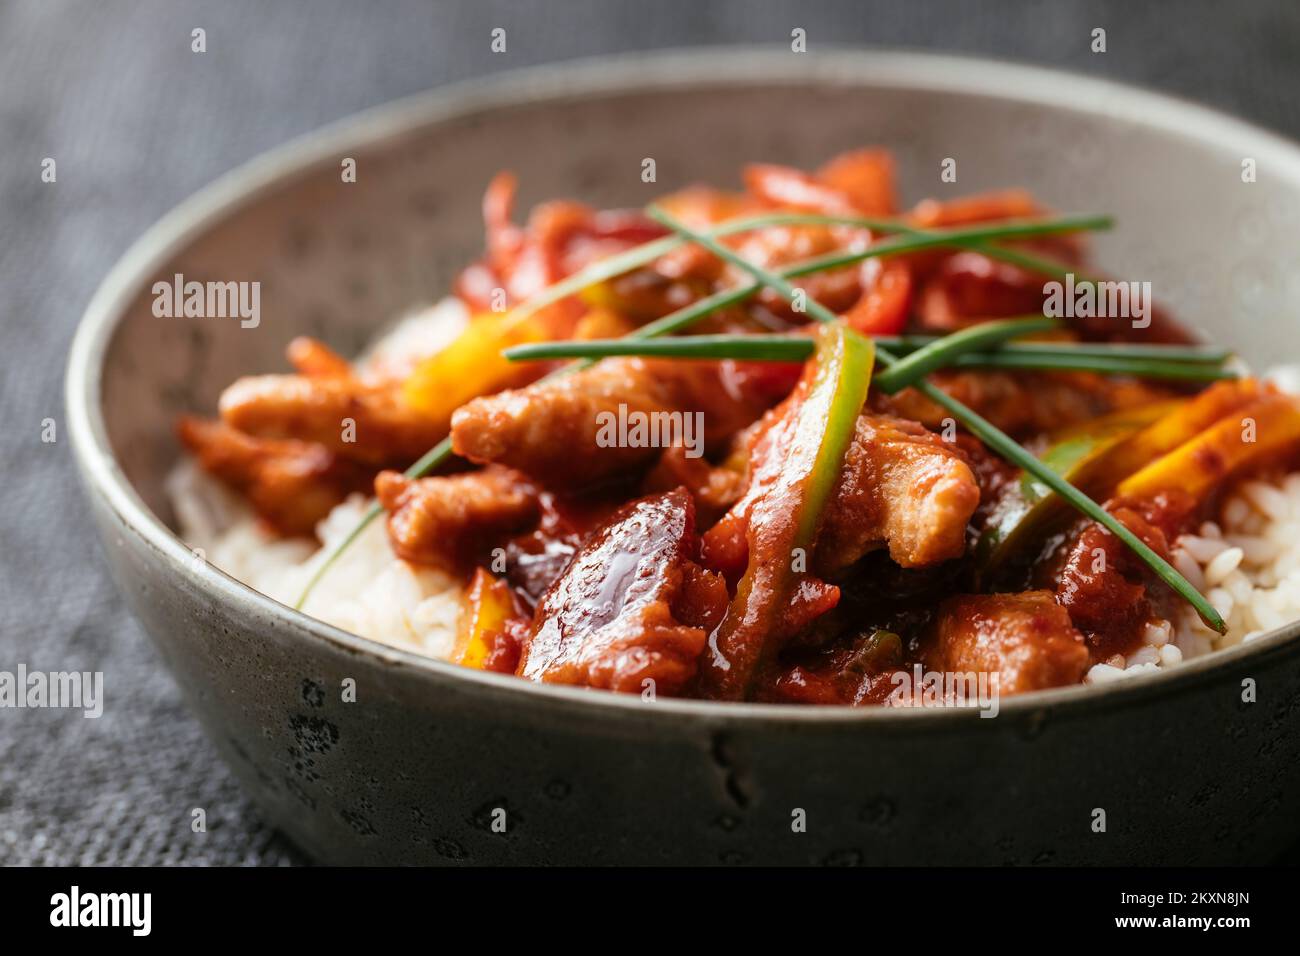 Protéines végétales texturées (TVP) avec une sauce piquante à la prune chinoise et des poivrons sur le riz. Banque D'Images